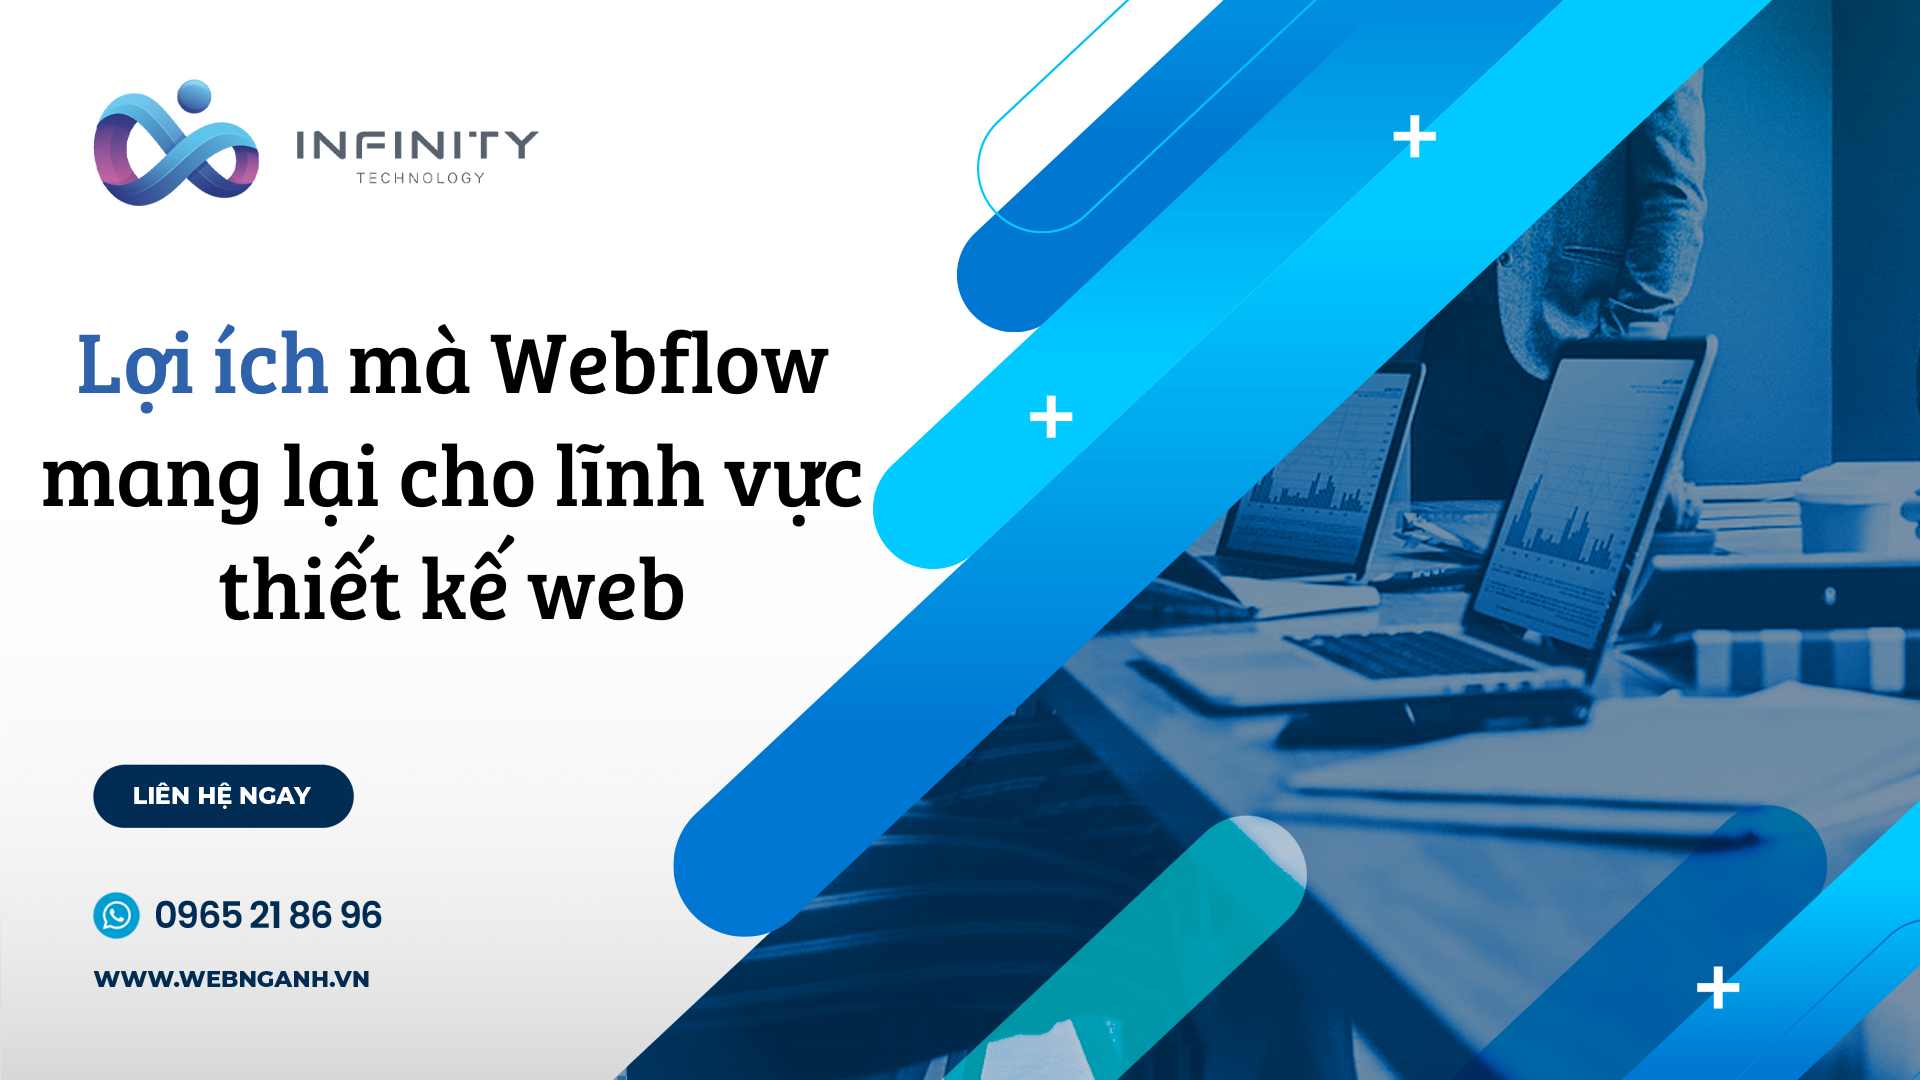 Lợi ích mà Webflow mang lại cho lĩnh vực thiết kế web